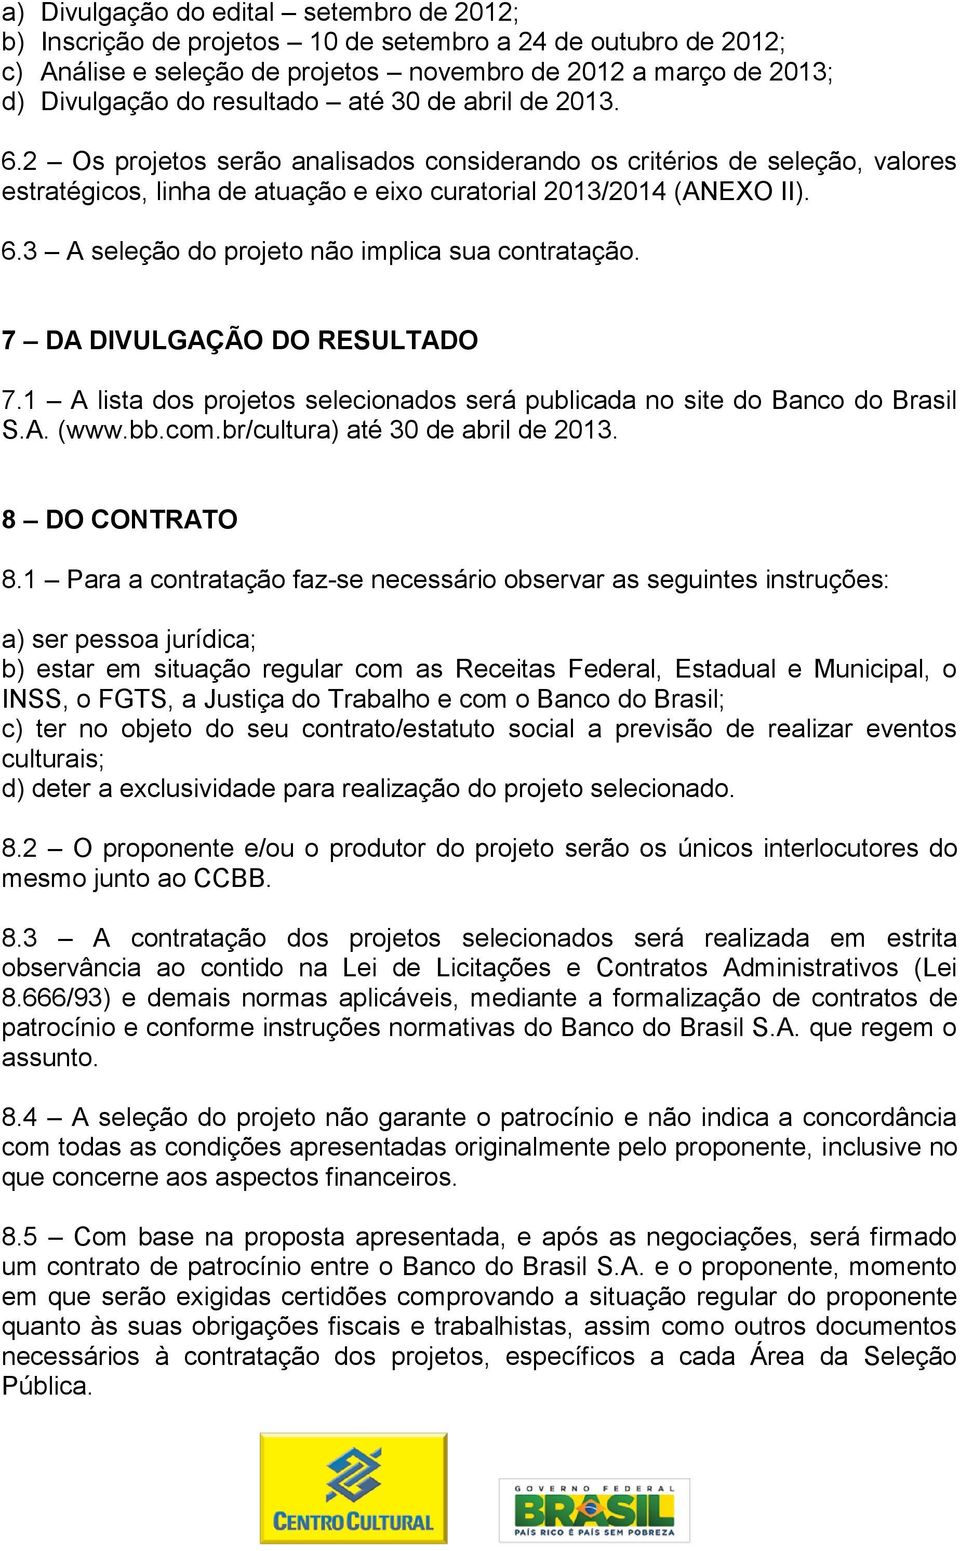 7 DA DIVULGAÇÃO DO RESULTADO 7.1 A lista dos projetos selecionados será publicada no site do Banco do Brasil S.A. (www.bb.com.br/cultura) até 30 de abril de 2013. 8 DO CONTRATO 8.